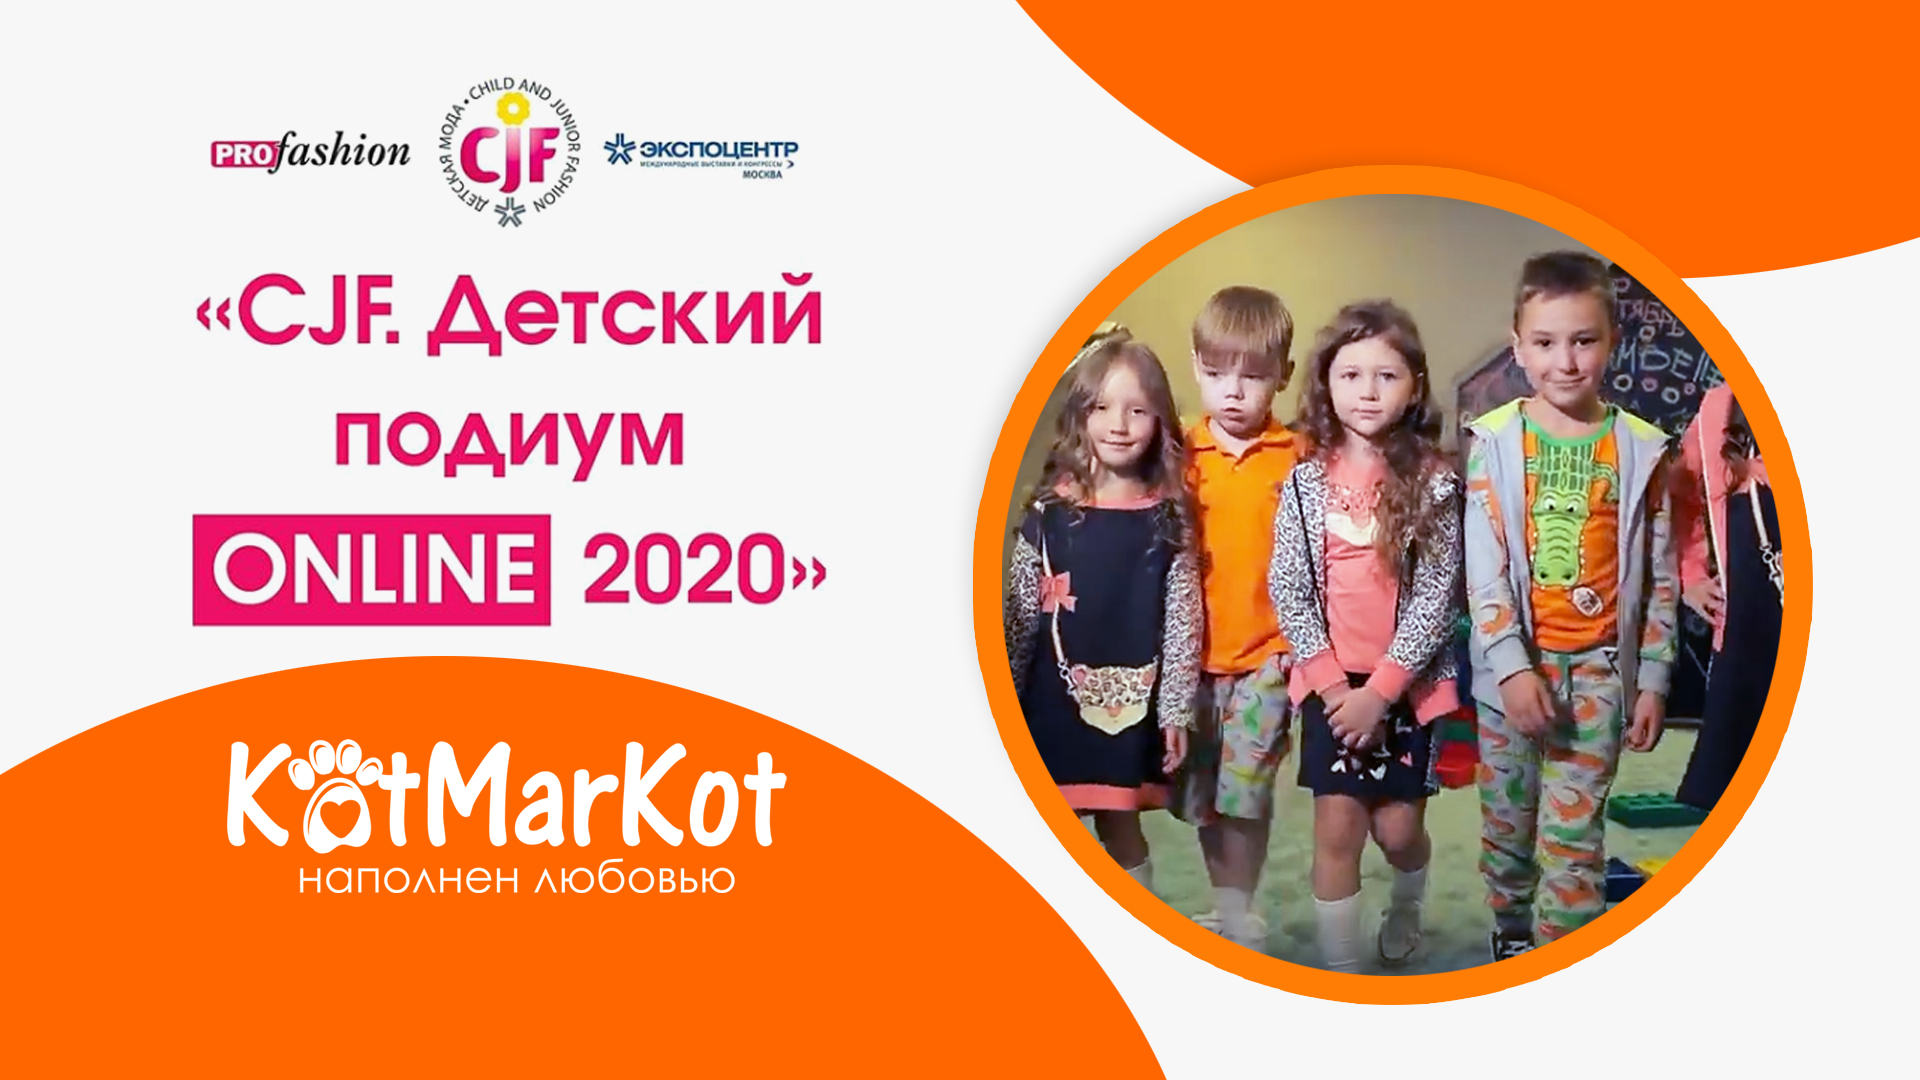 КотМарКот - детский подиум CJF ONLINE-2020